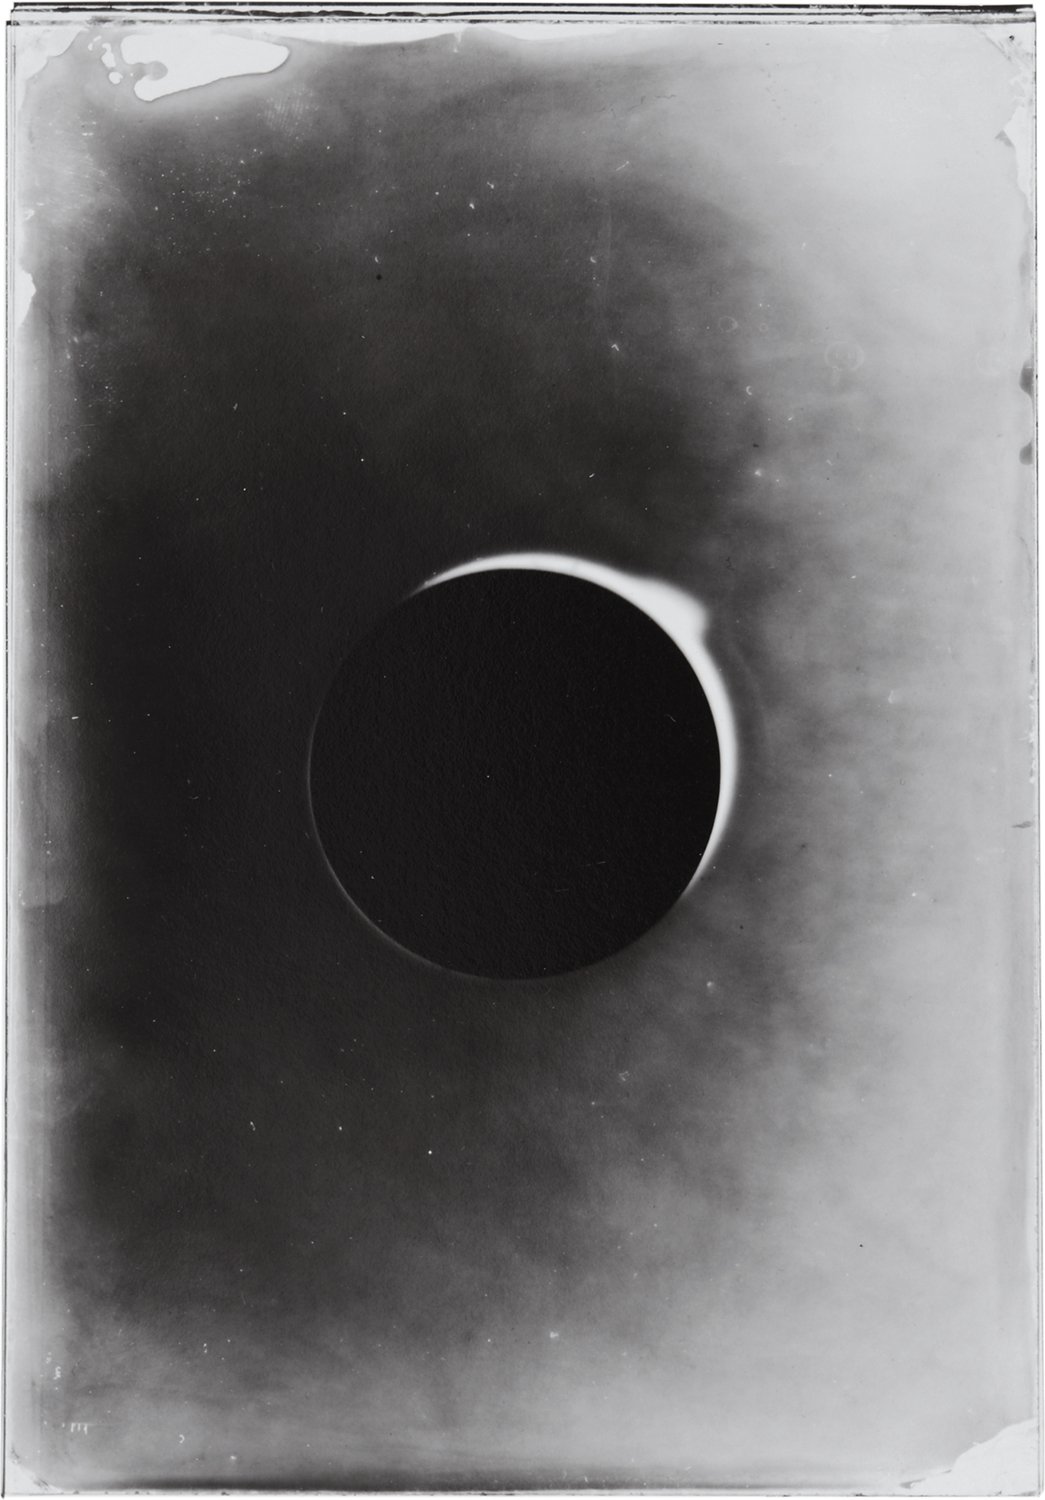 Eclipse-6.jpg